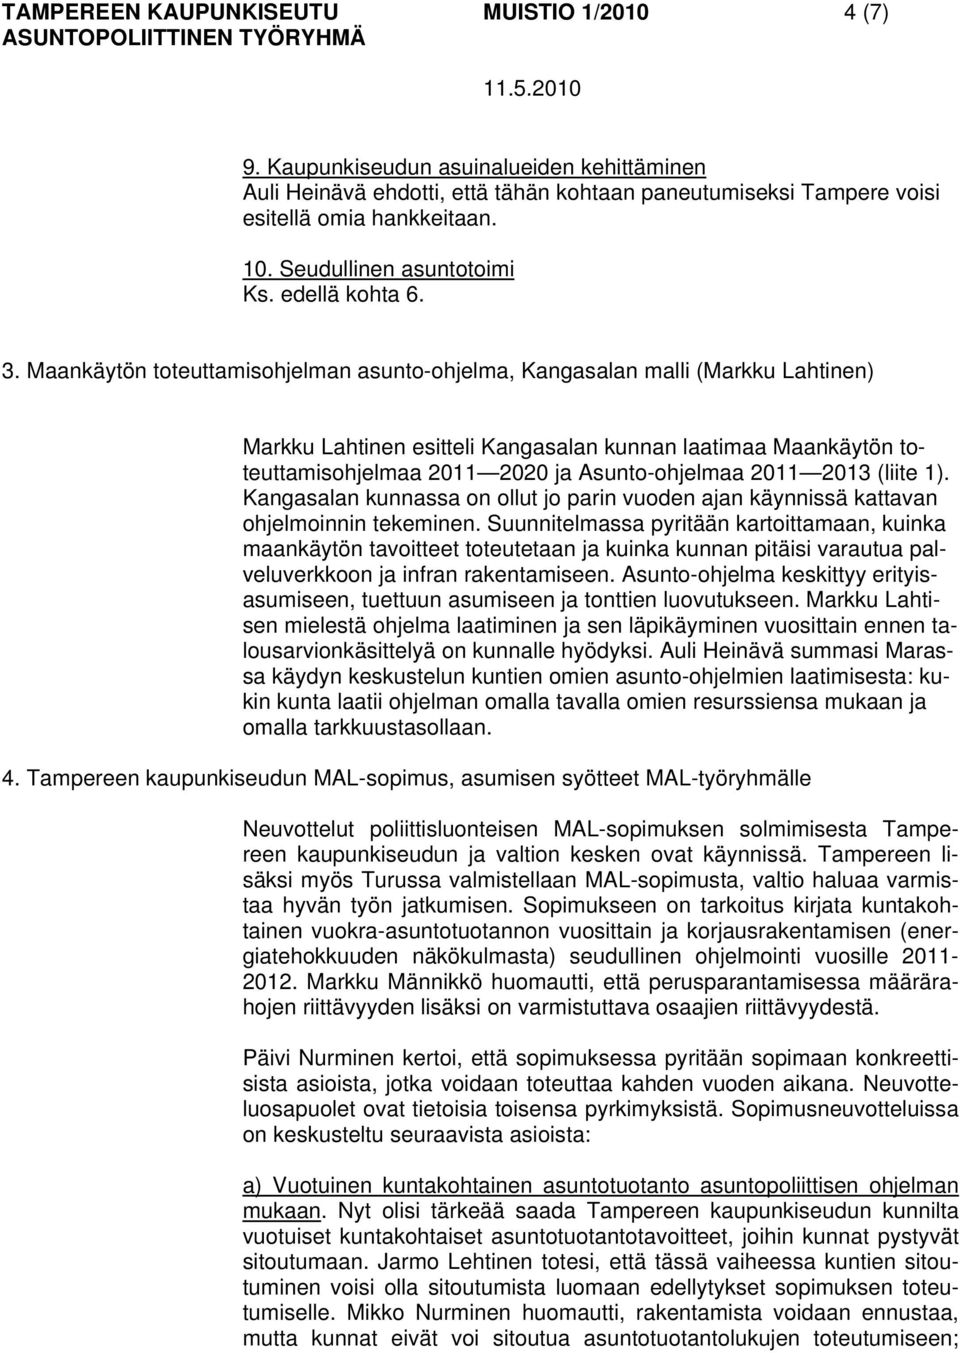 Maankäytön toteuttamisohjelman asunto-ohjelma, Kangasalan malli (Markku Lahtinen) Markku Lahtinen esitteli Kangasalan kunnan laatimaa Maankäytön toteuttamisohjelmaa 2011 2020 ja Asunto-ohjelmaa 2011